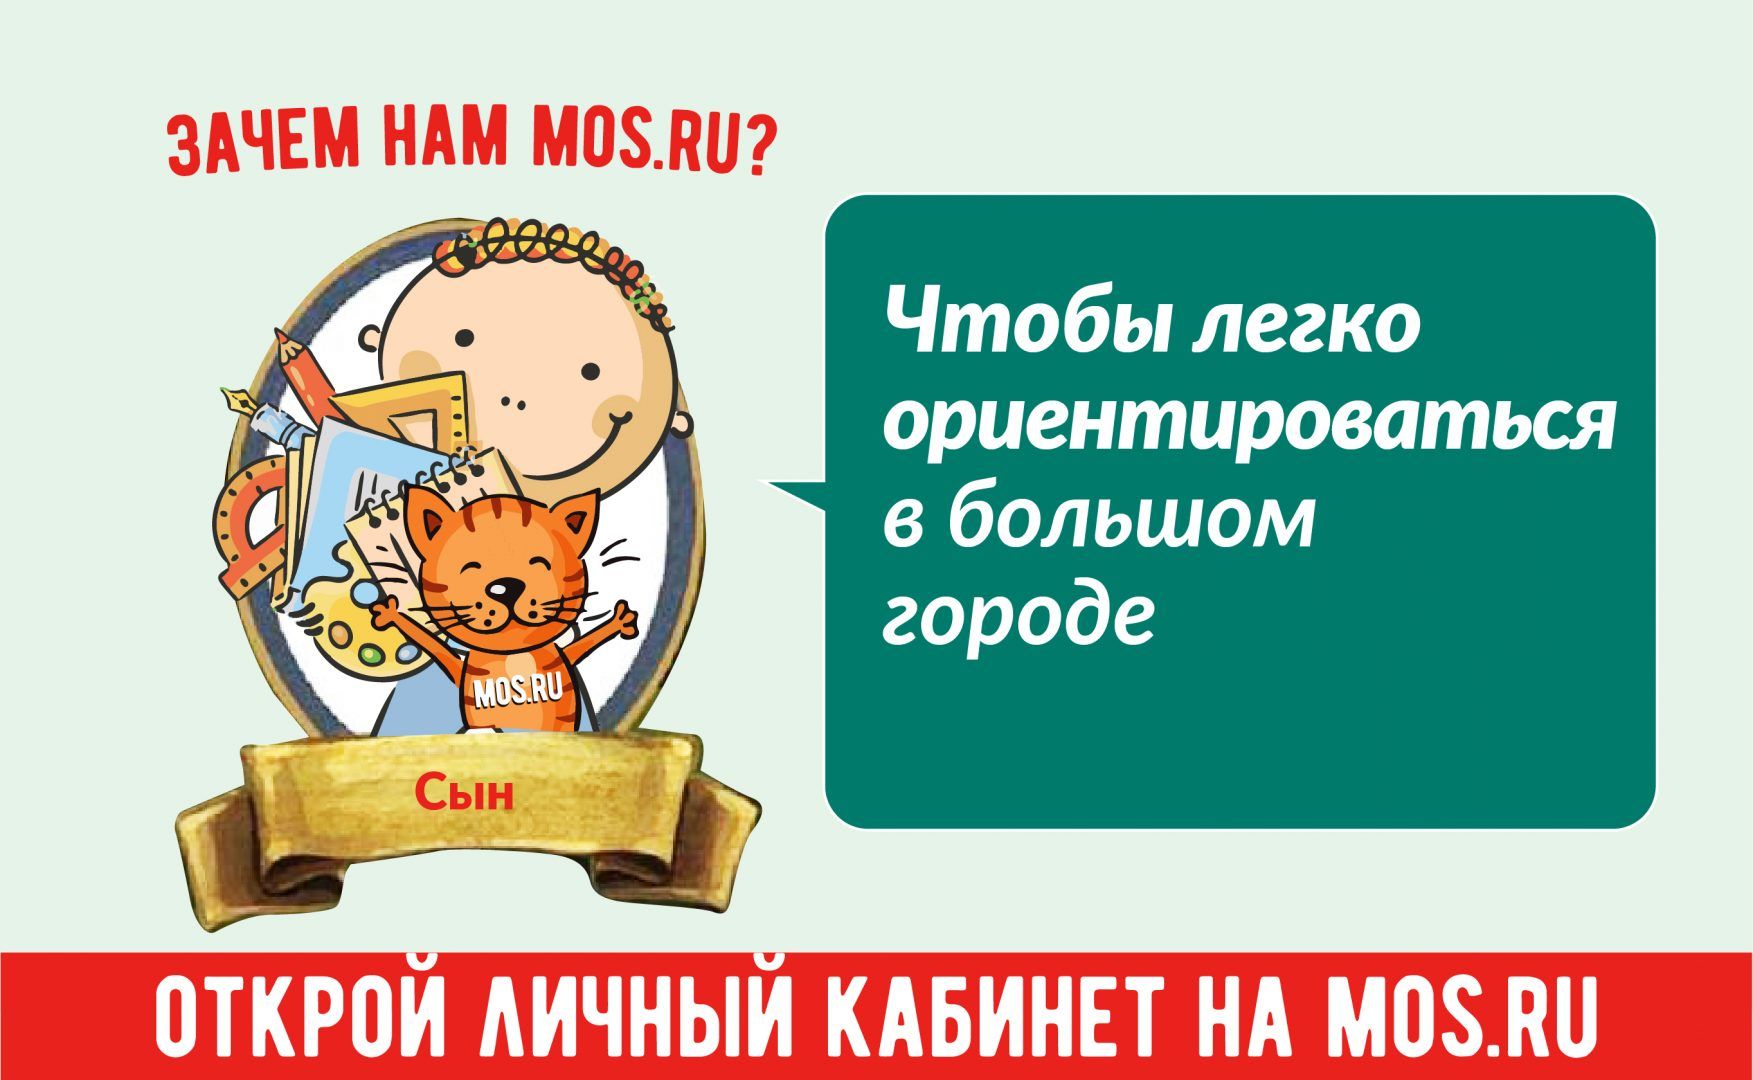 Персональная страничка поможет получать необходимые услуги, не выходя из дома. Фото: сайт мэра Москвы 